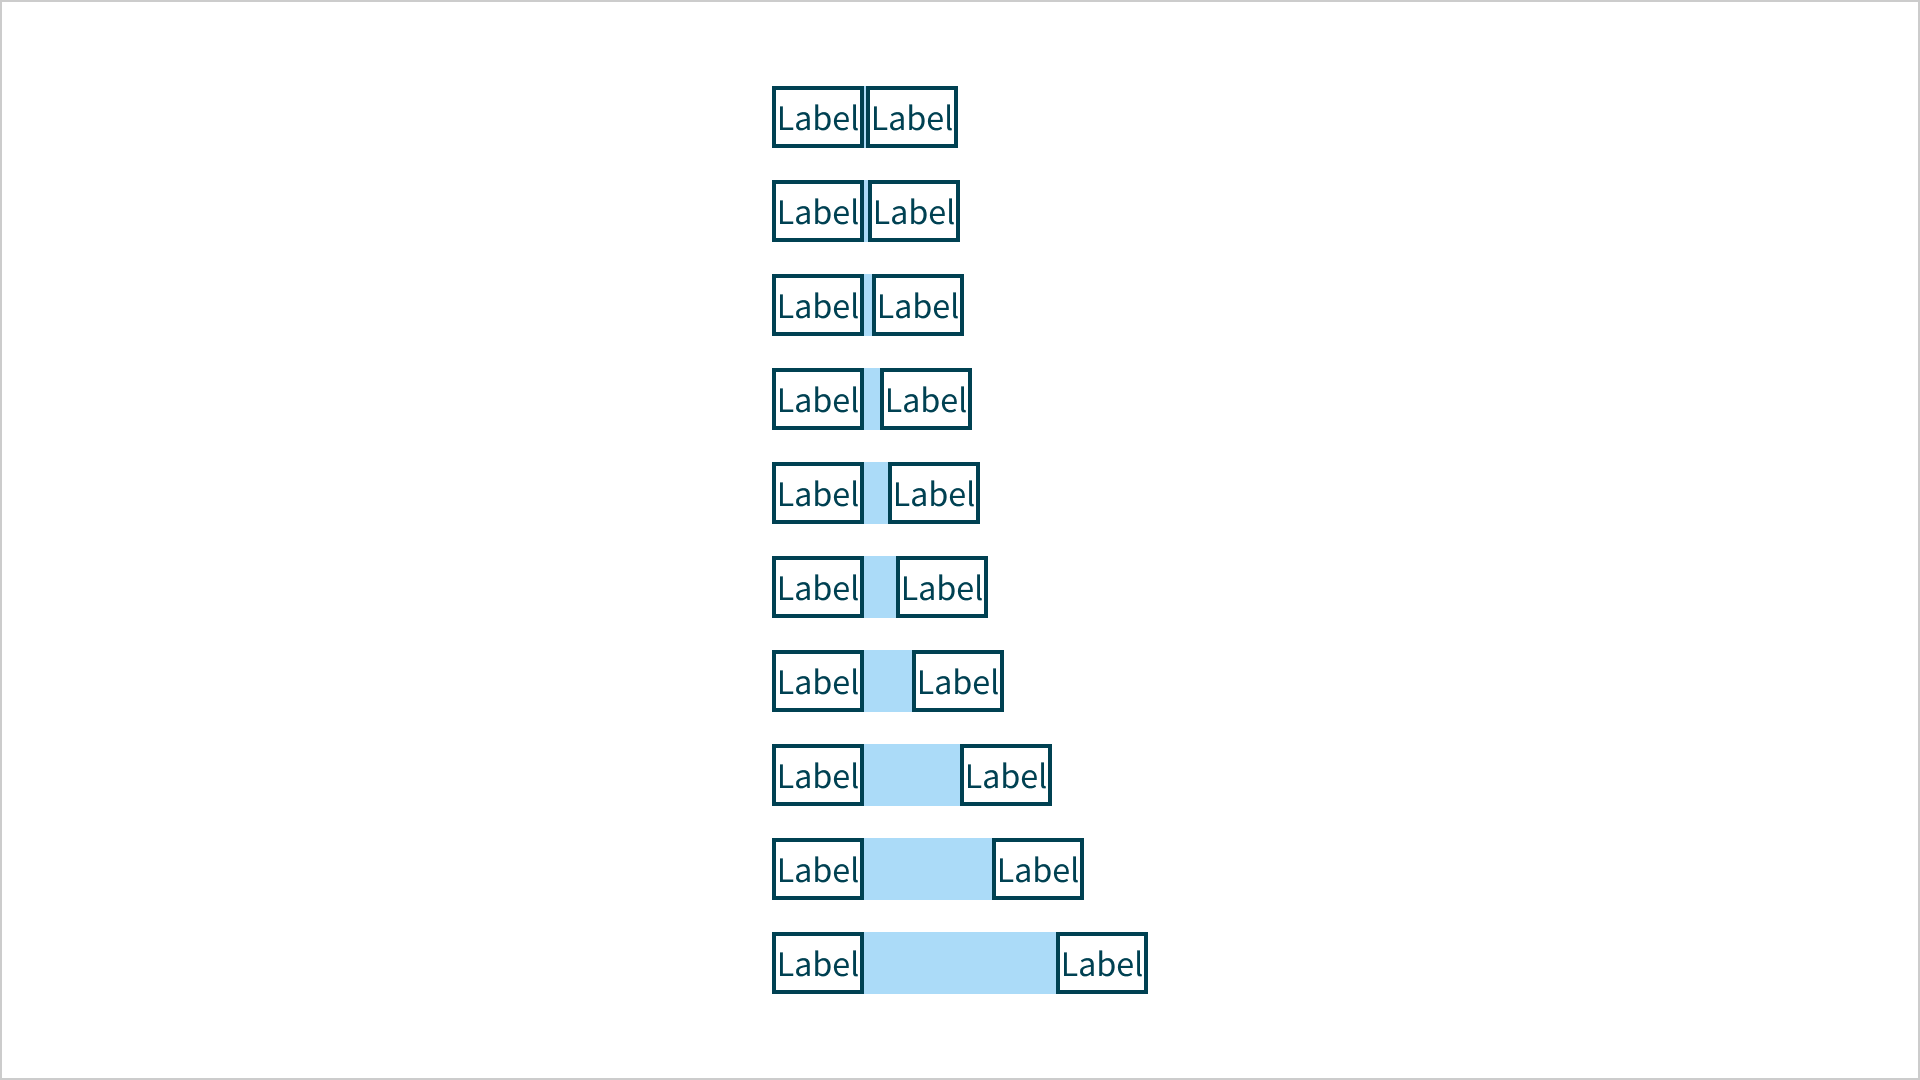 Spacing scale met verticaal 2 kolommen van 10 blokjes. In elk blokje staat de tekst 'label'. Per twee blokjes is er hotizontaal een lichtblauw vlak De vlakken worden per blokje breeder.